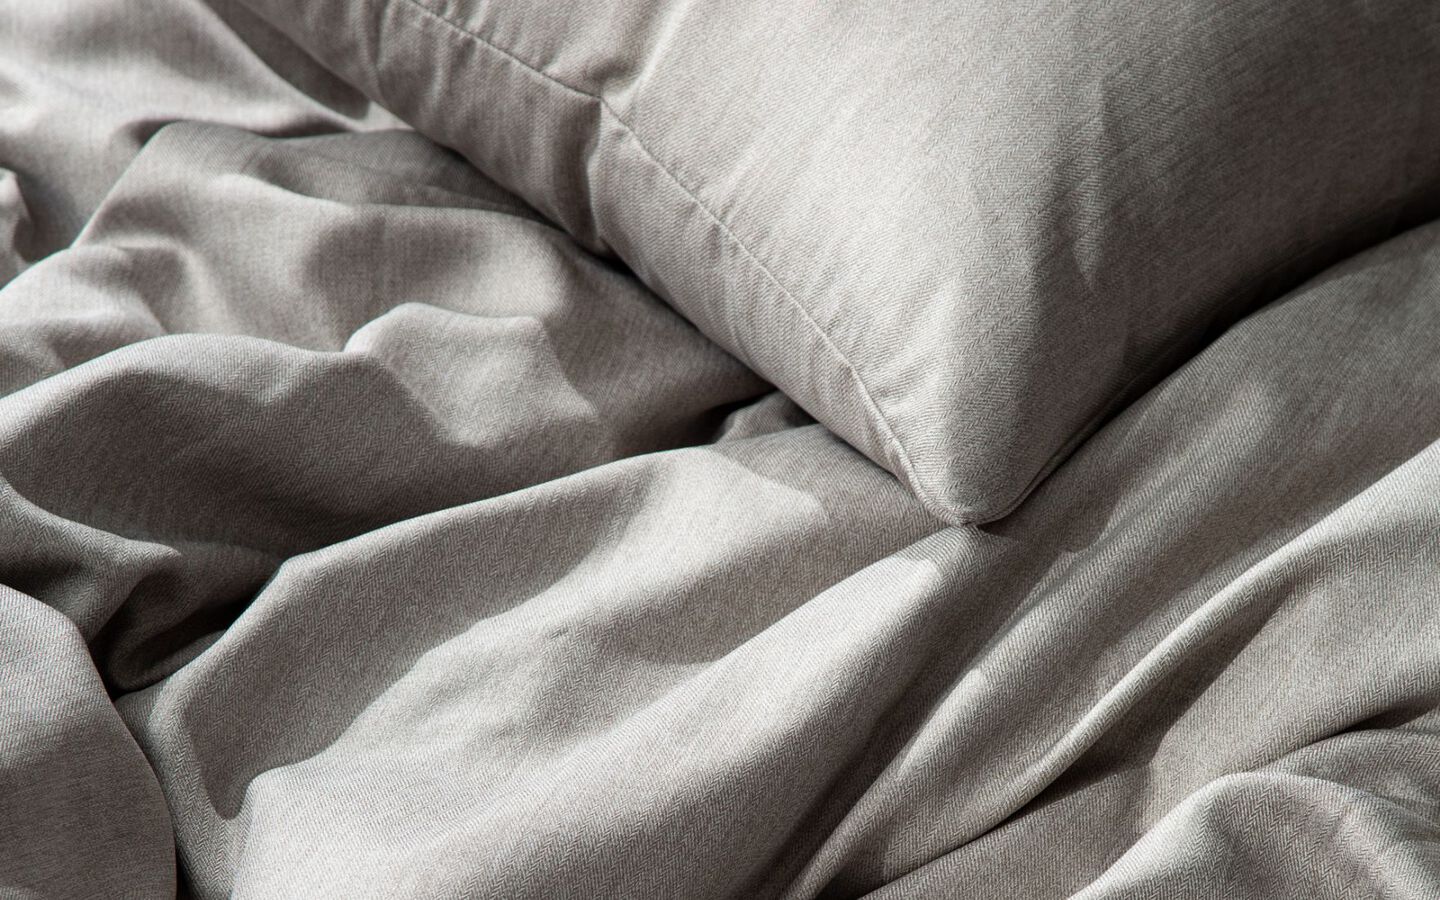 Closeup image of grey fabric bedding